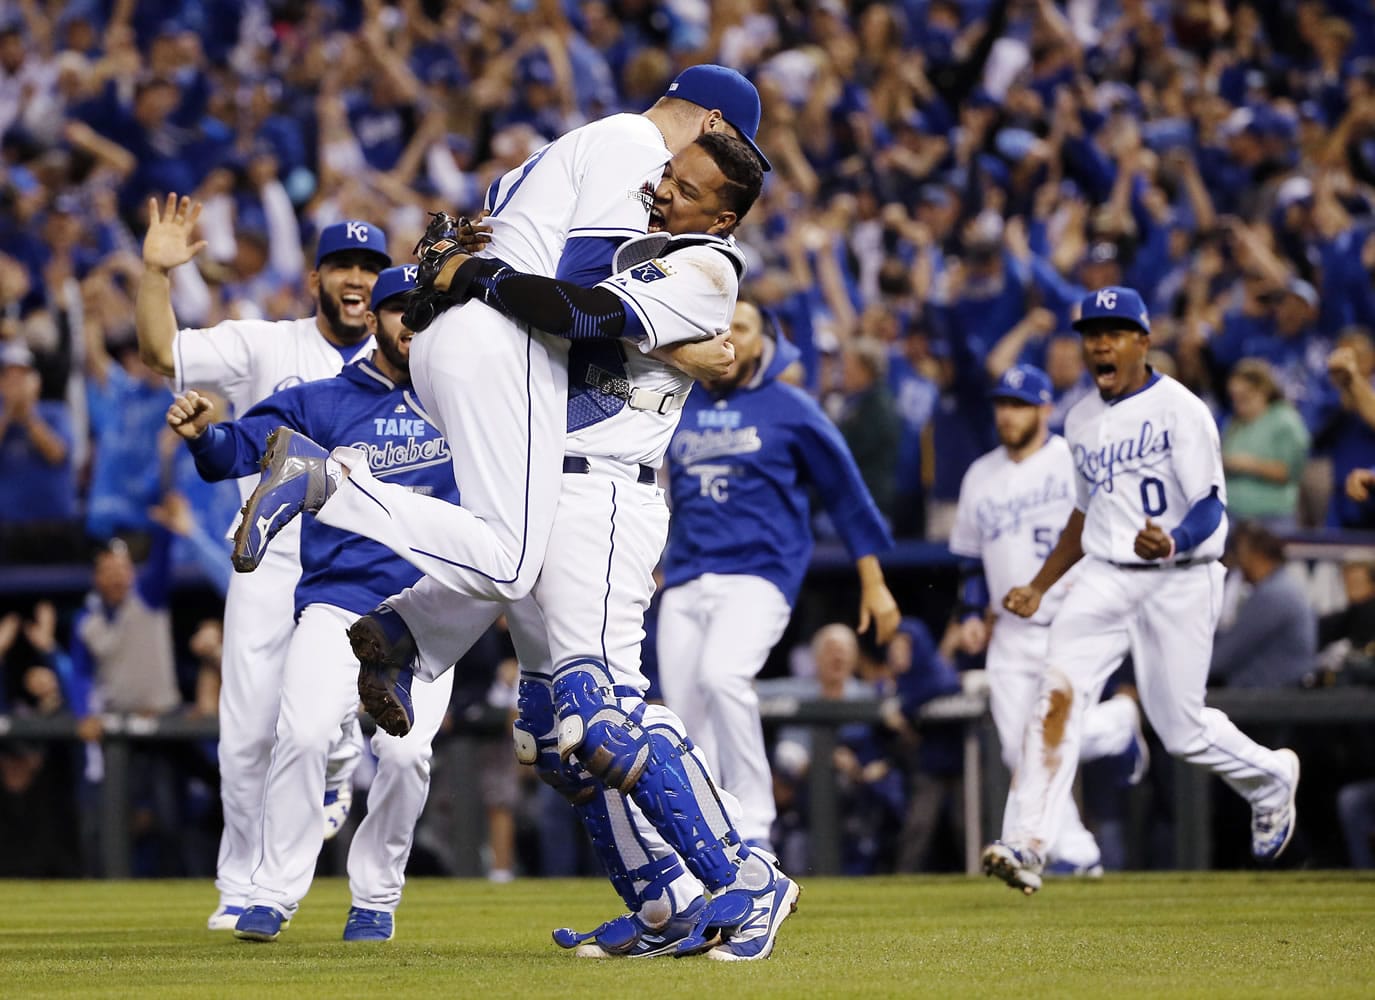 Royals WADE DAVIS celebrates winning the 2015 World Series - Game